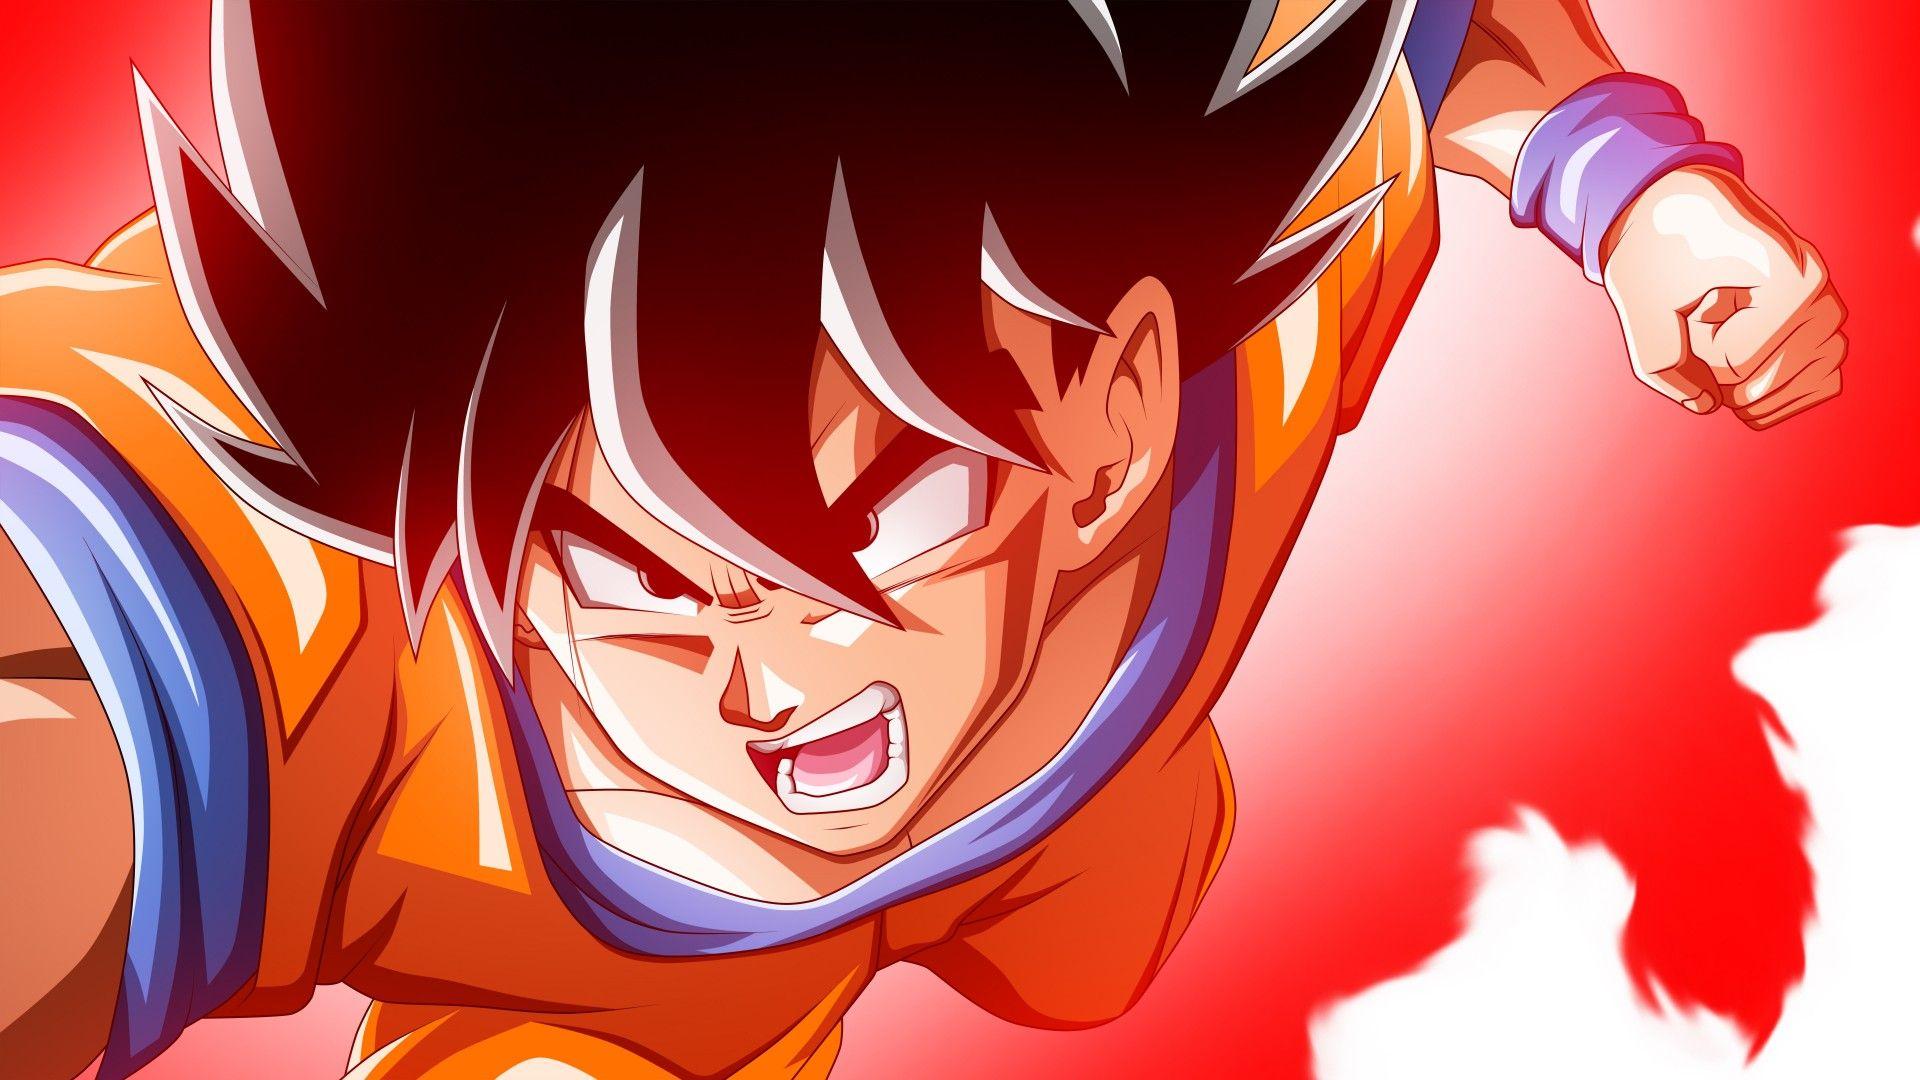 Download wallpapers of Goku, Dragon Ball Super, 4K, 5K, Anime